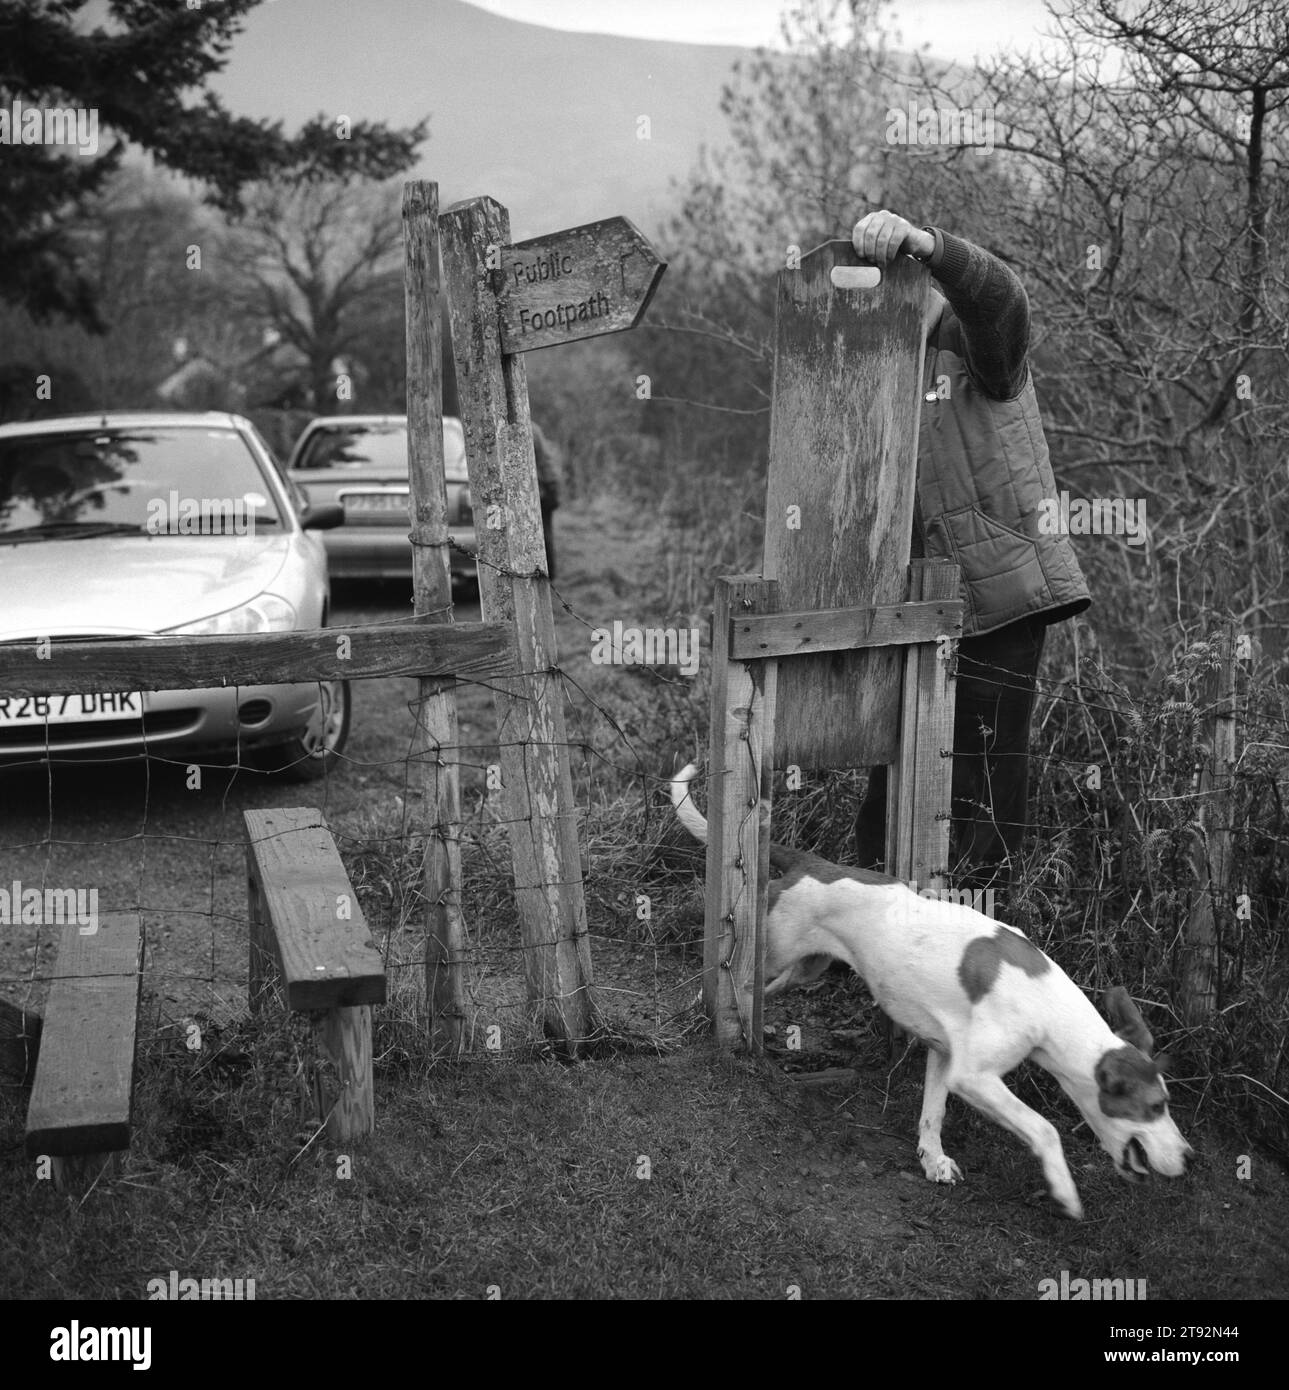 Fox Hunting UK, Lake District e Blencathra Foxhounds. Un cane torna al branco. Passa attraverso un cancello per cani. Vicino a Braithwaite, Cumbria. 2002, 2000 Inghilterra HOMER SYKES Foto Stock